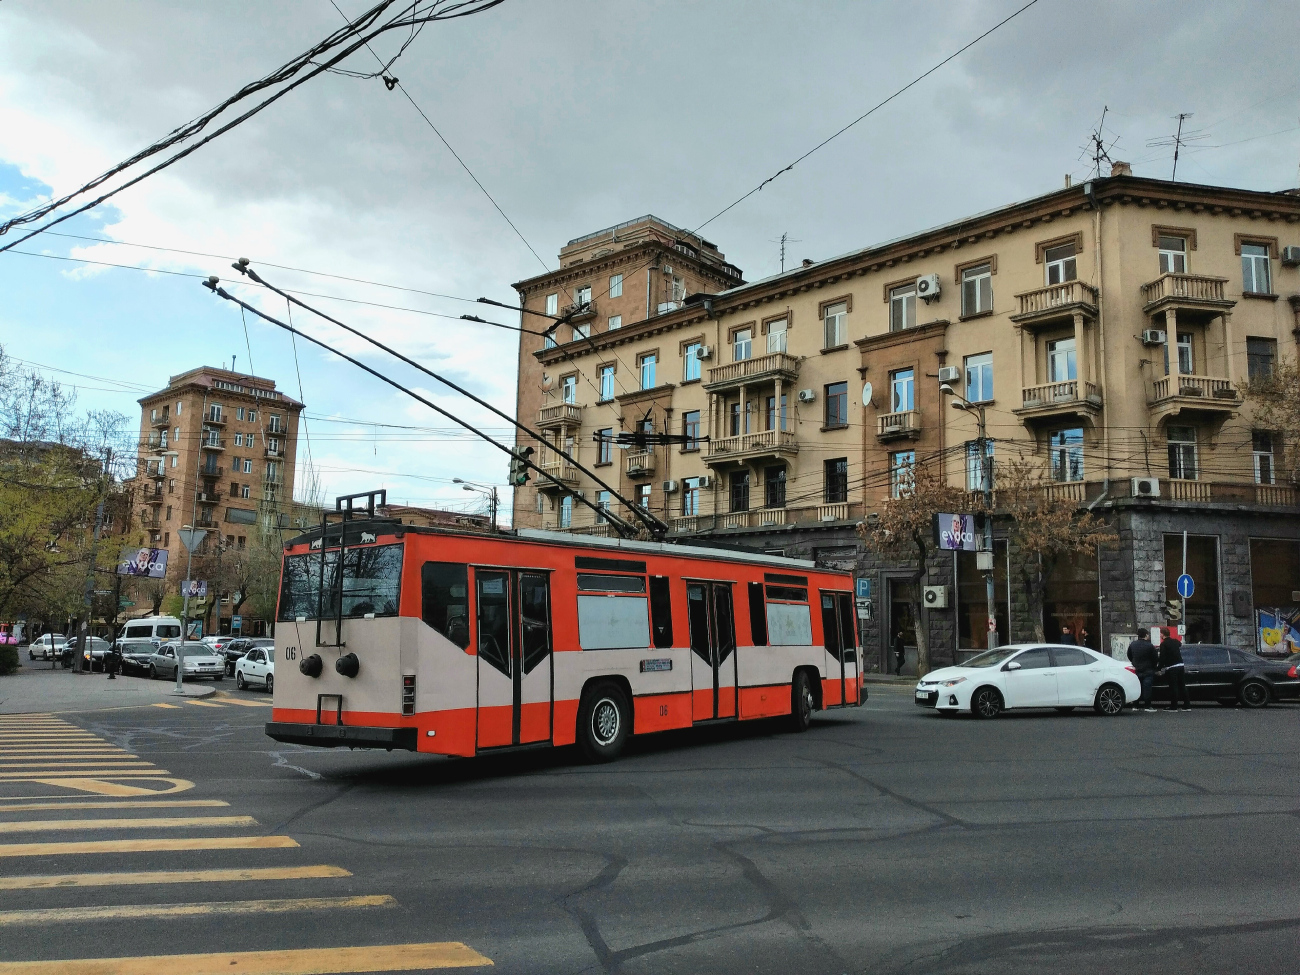 Ереван троллейбус. Ереван троллейбус Skoda 14. Yerevan троллейбус. Skoda 14tr. Ереван троллейбус Skoda 14 tr 02.